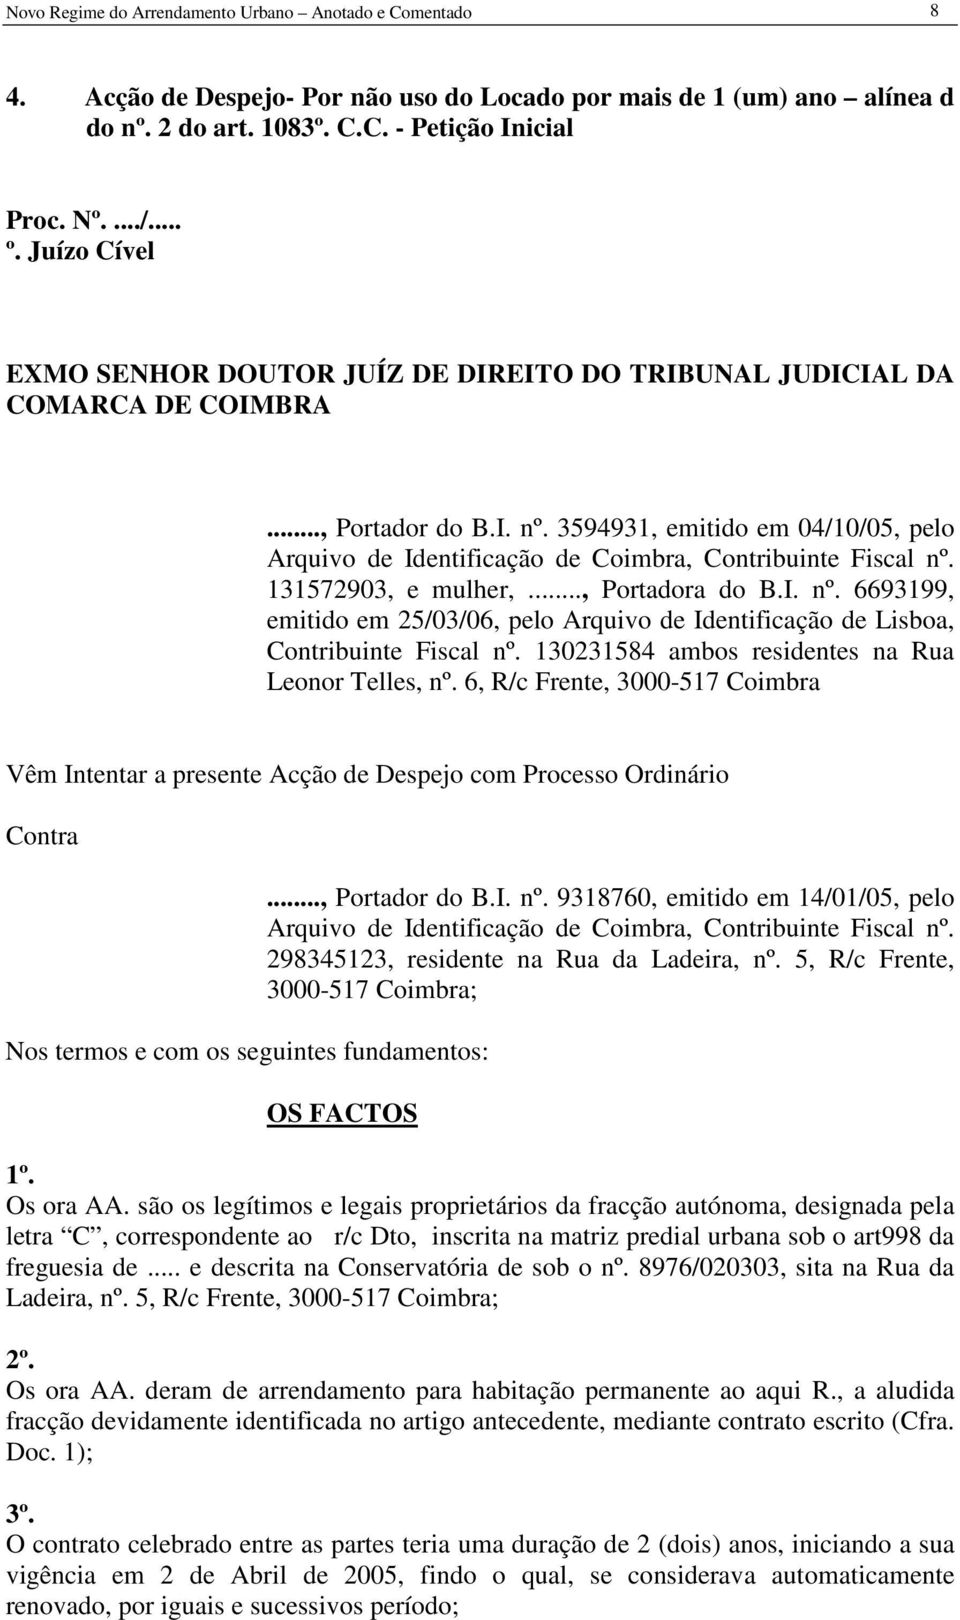 3594931, emitido em 04/10/05, pelo Arquivo de Identificação de Coimbra, Contribuinte Fiscal nº. 131572903, e mulher,..., Portadora do B.I. nº. 6693199, emitido em 25/03/06, pelo Arquivo de Identificação de Lisboa, Contribuinte Fiscal nº.